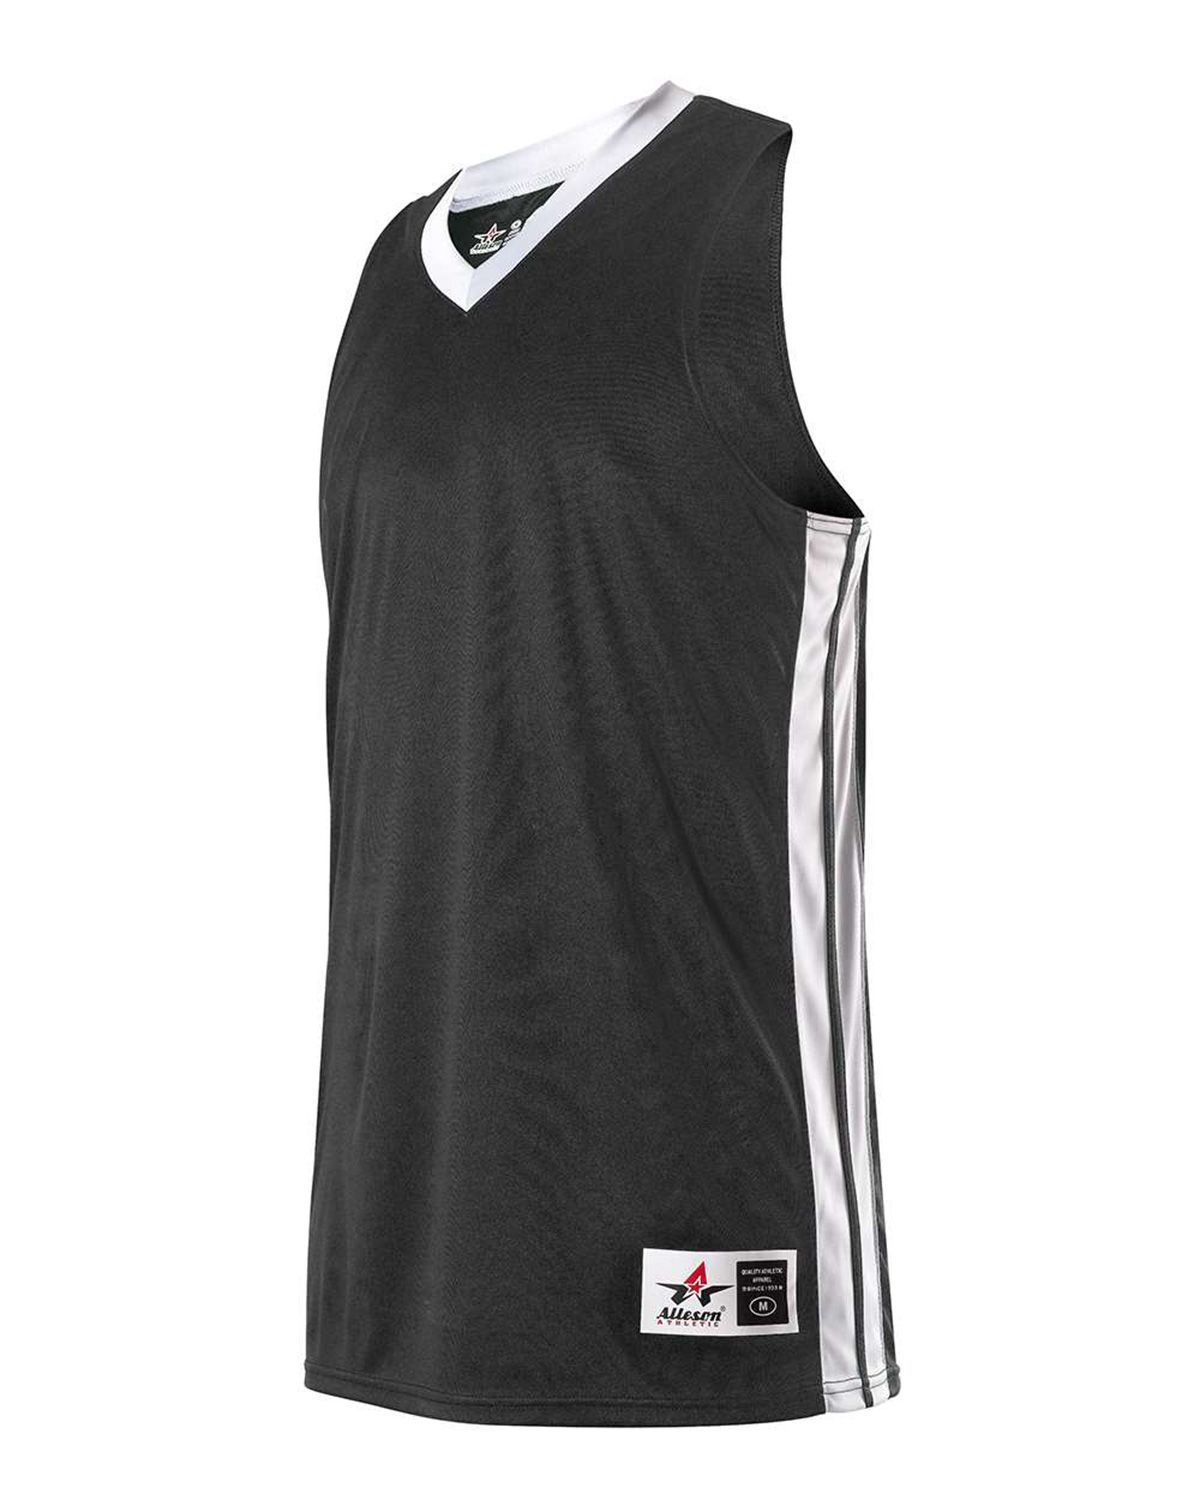 sleeveless basketball jersey